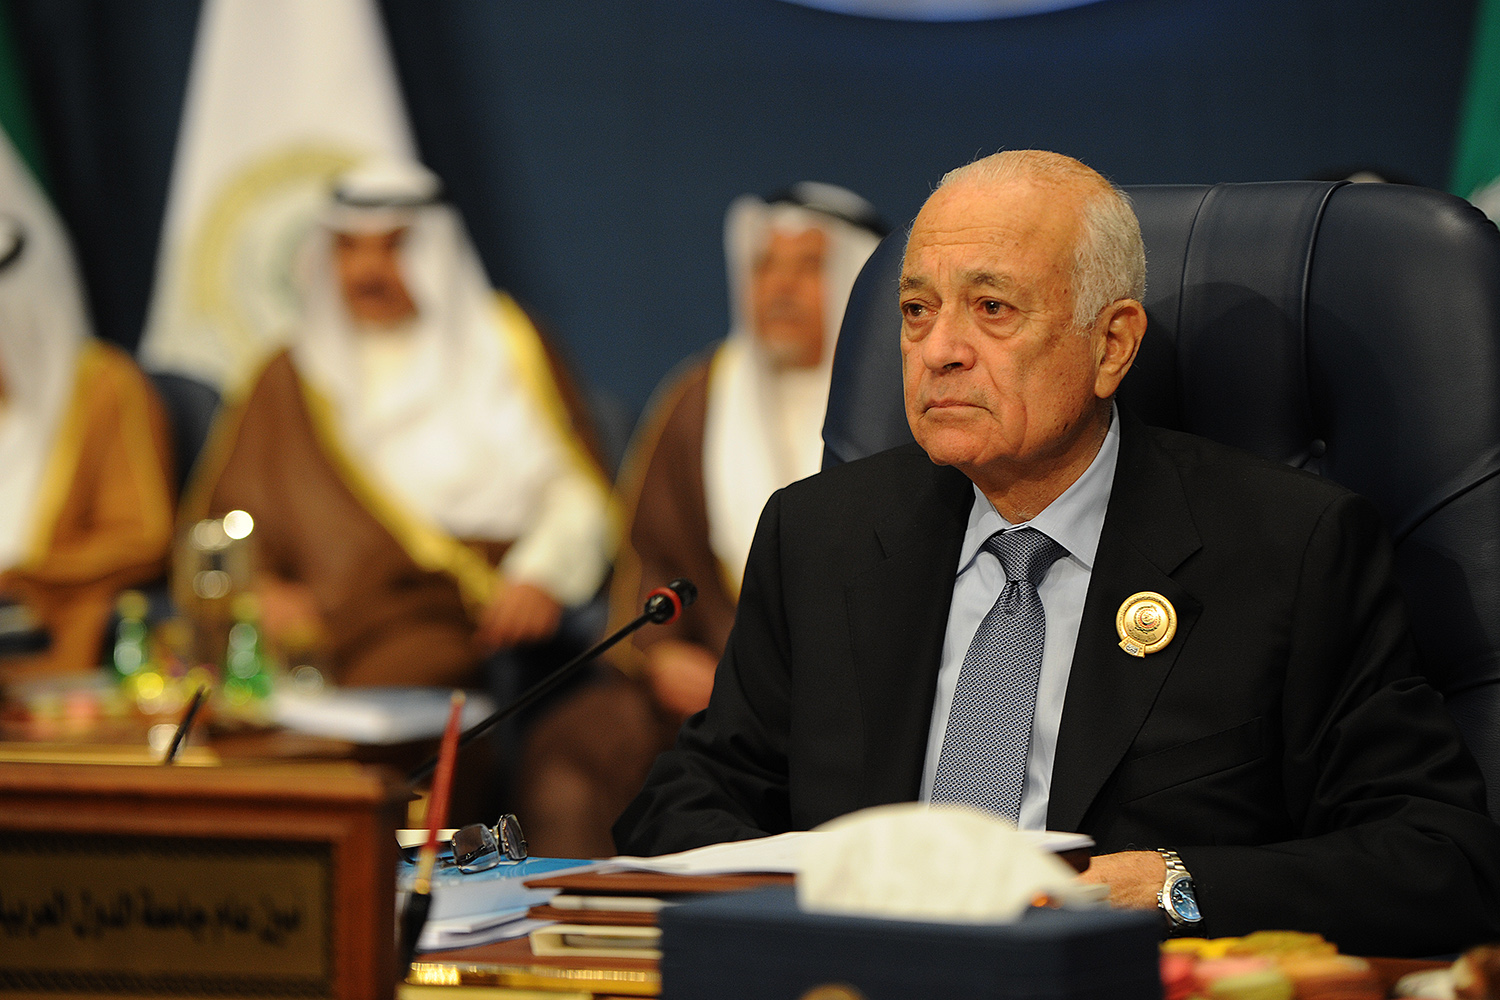 Arab League Secretary General Nabil Al-Araby